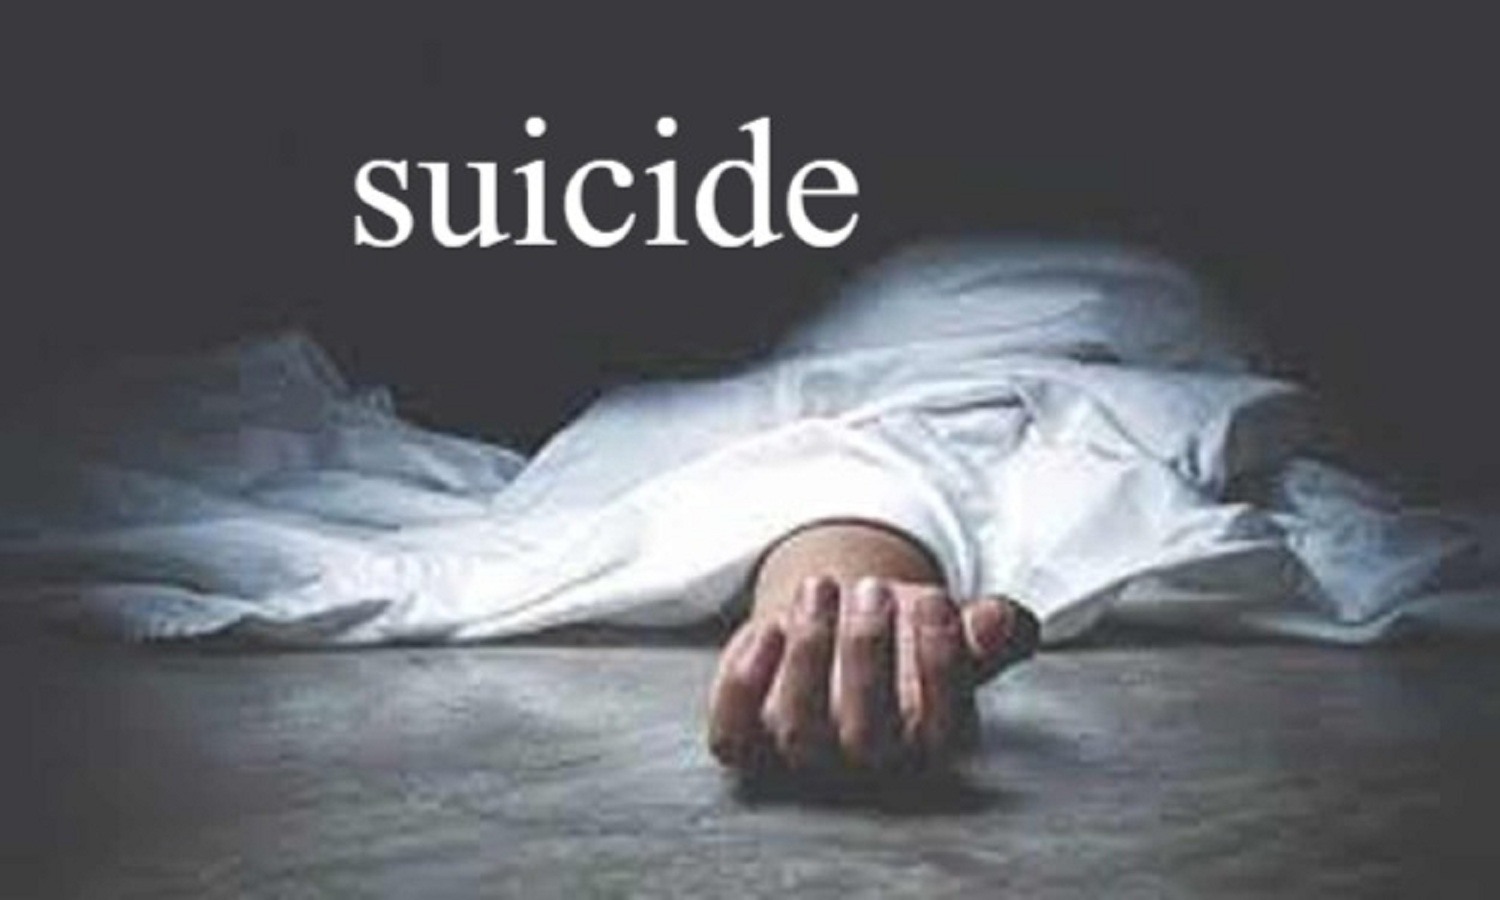 Kota Coaching Student Commits suicide, Kota Coaching, Suicide in Kota, Hostel in Kota, Crime News Kota, Kota News, Latest News Kota, Hindi News Kota, TIS Media,